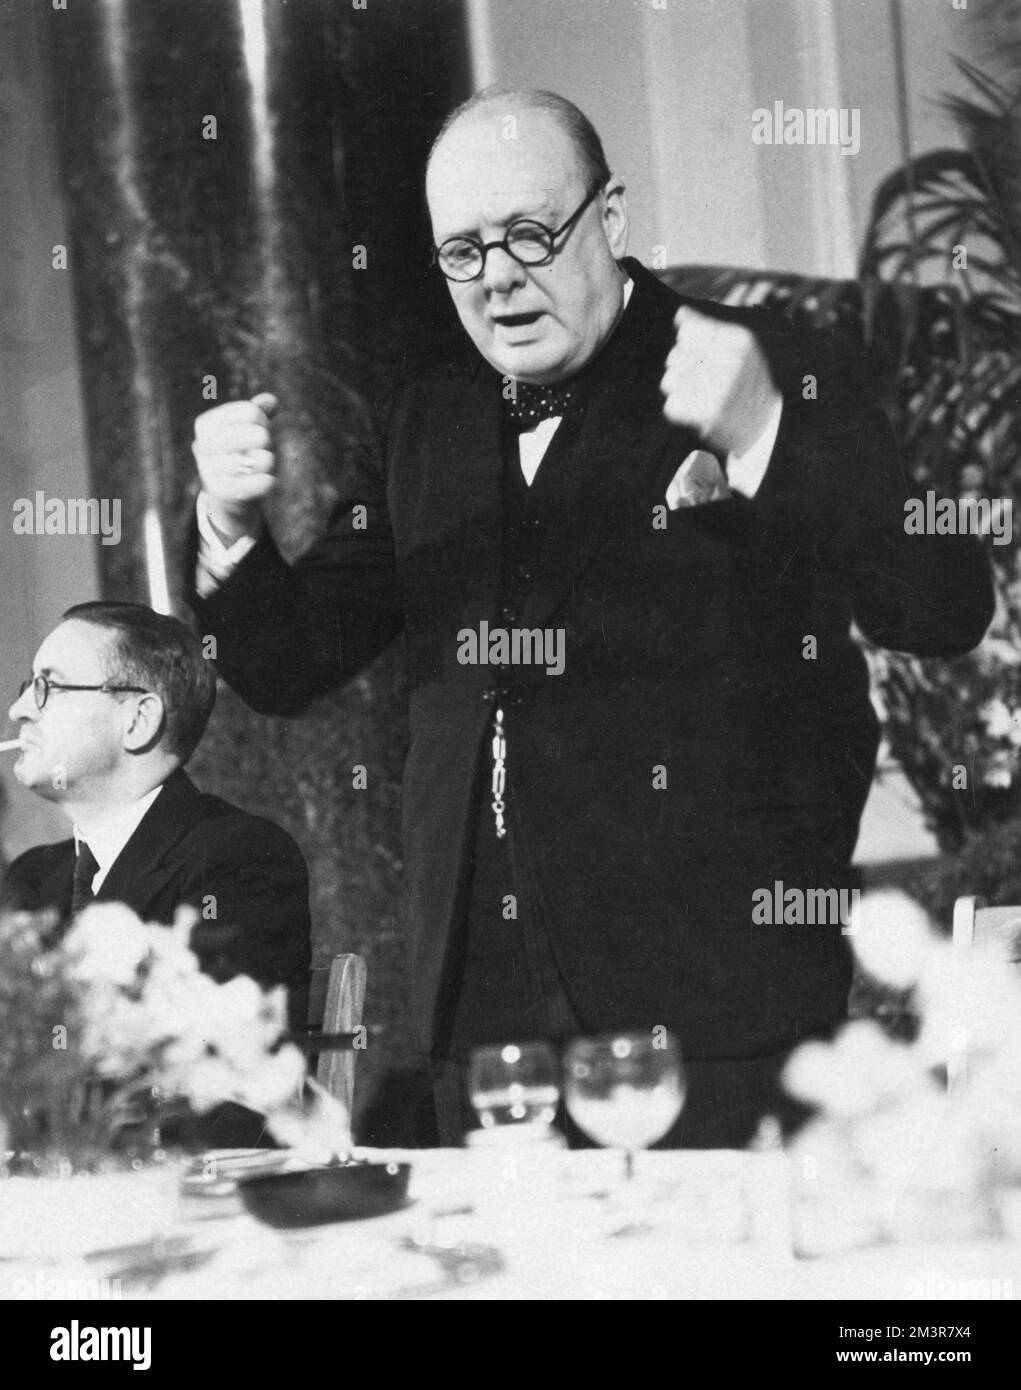 Des poings serrés comme le dit M. Churchill sur les procès des Londoniens pendant l'hiver violent Blitz. 1941 Date: 1941 Banque D'Images